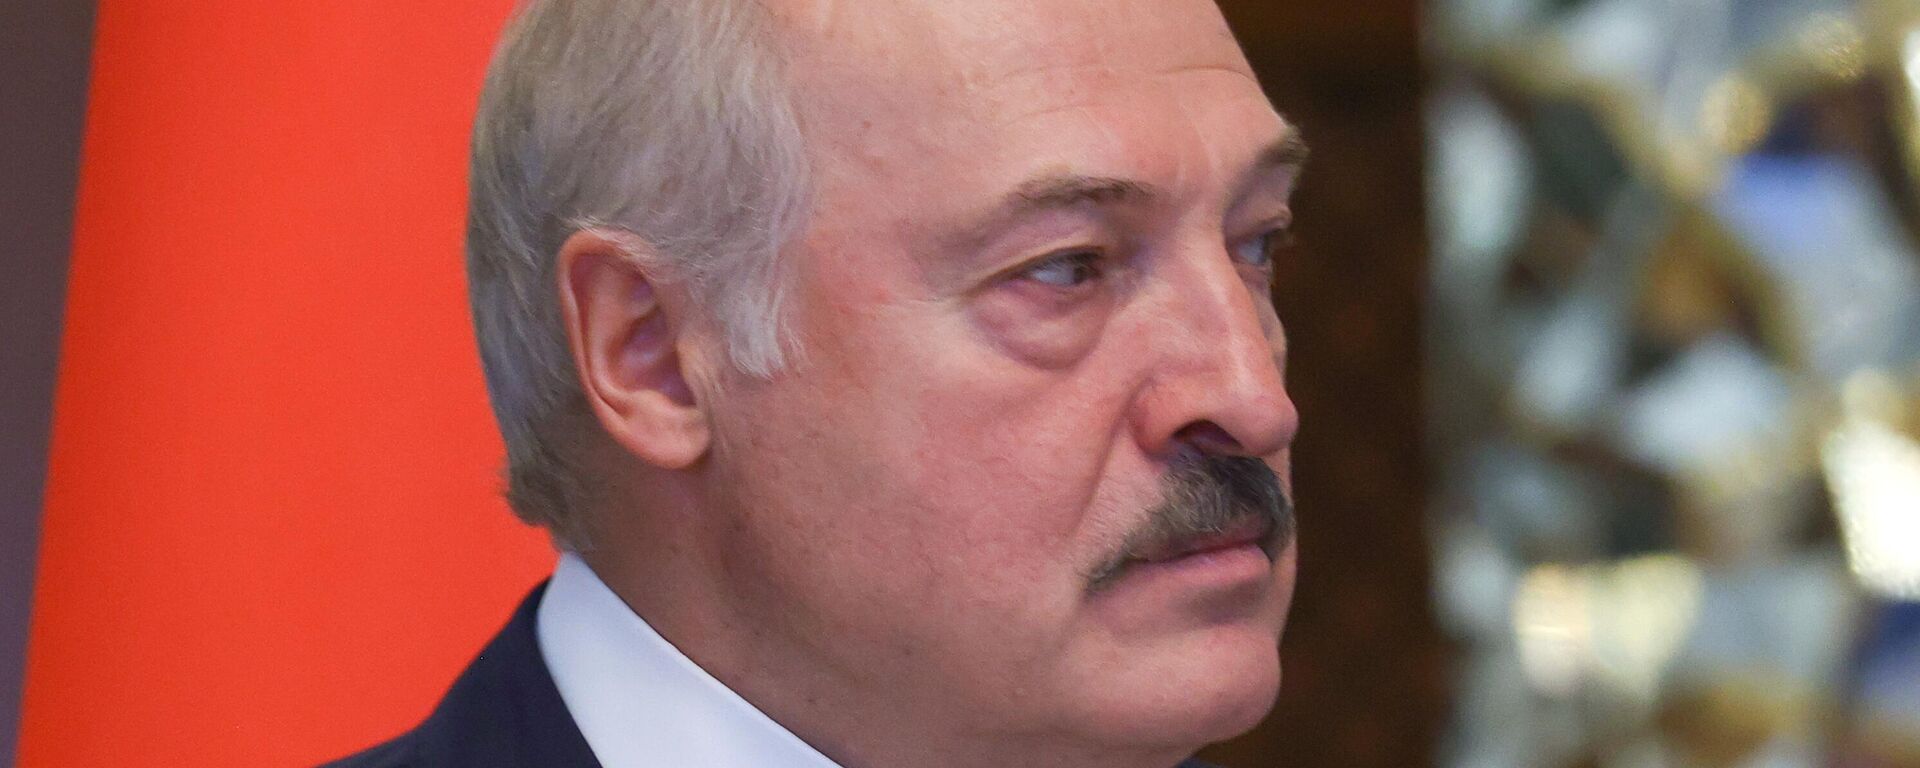 Alexandr Lukashenko, presidente de Bielorrusia - Sputnik Mundo, 1920, 30.11.2021